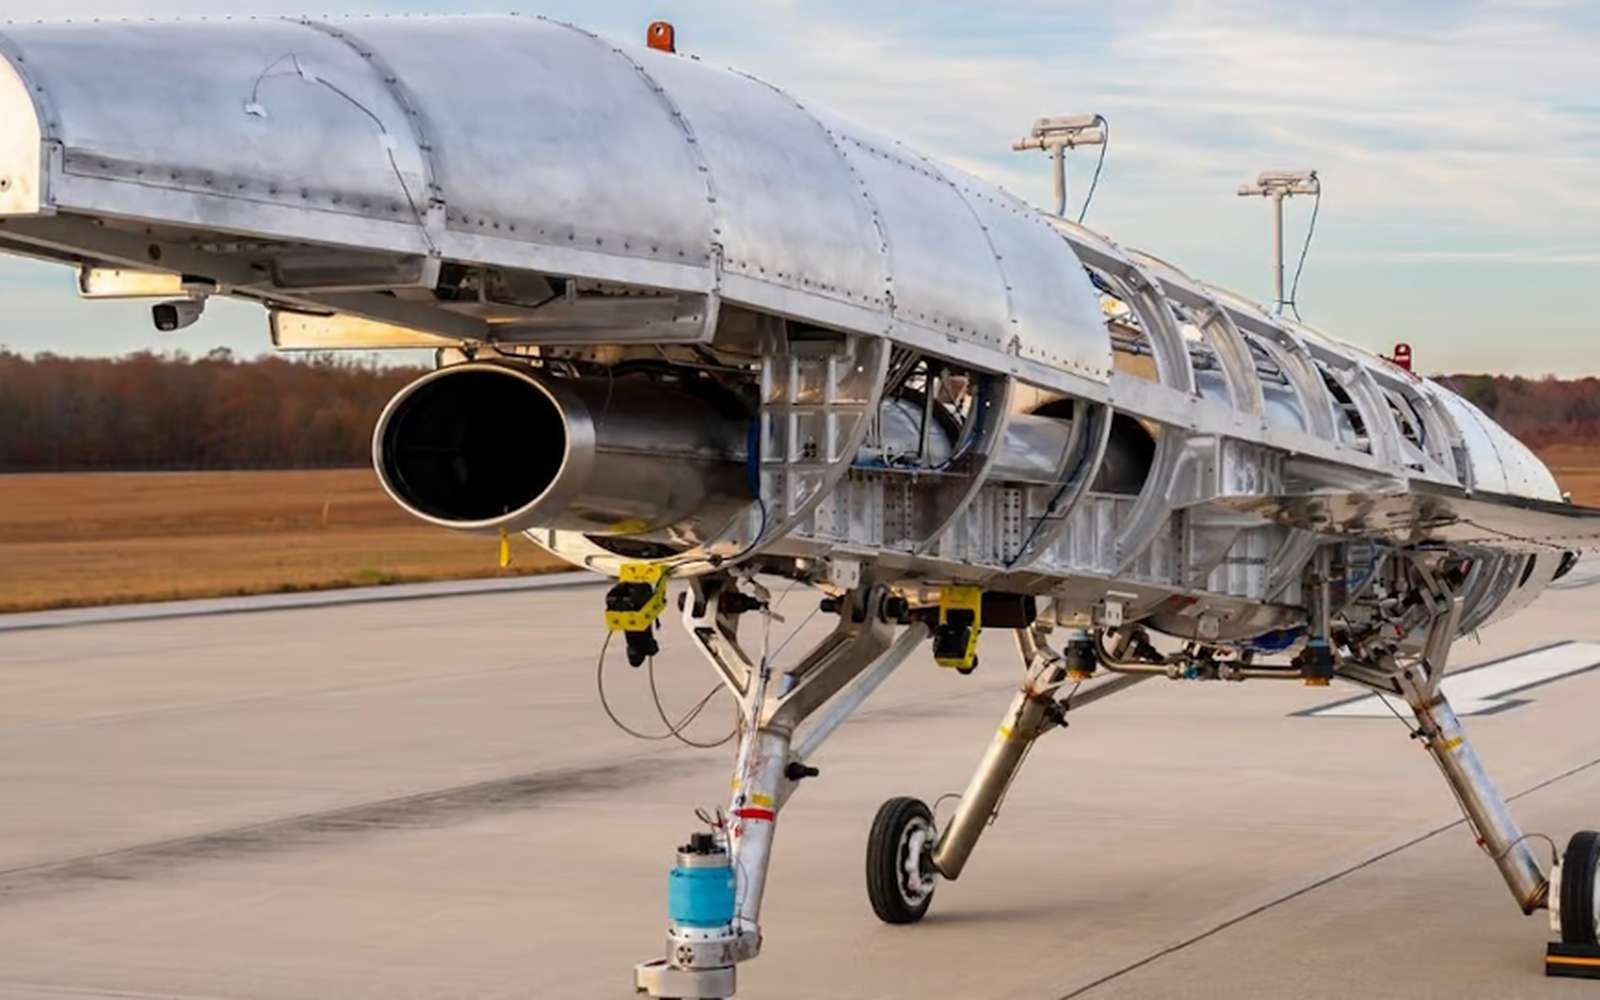 Cet avion veut briser le record de vitesse inégalé du légendaire SR-71 Blackbird !